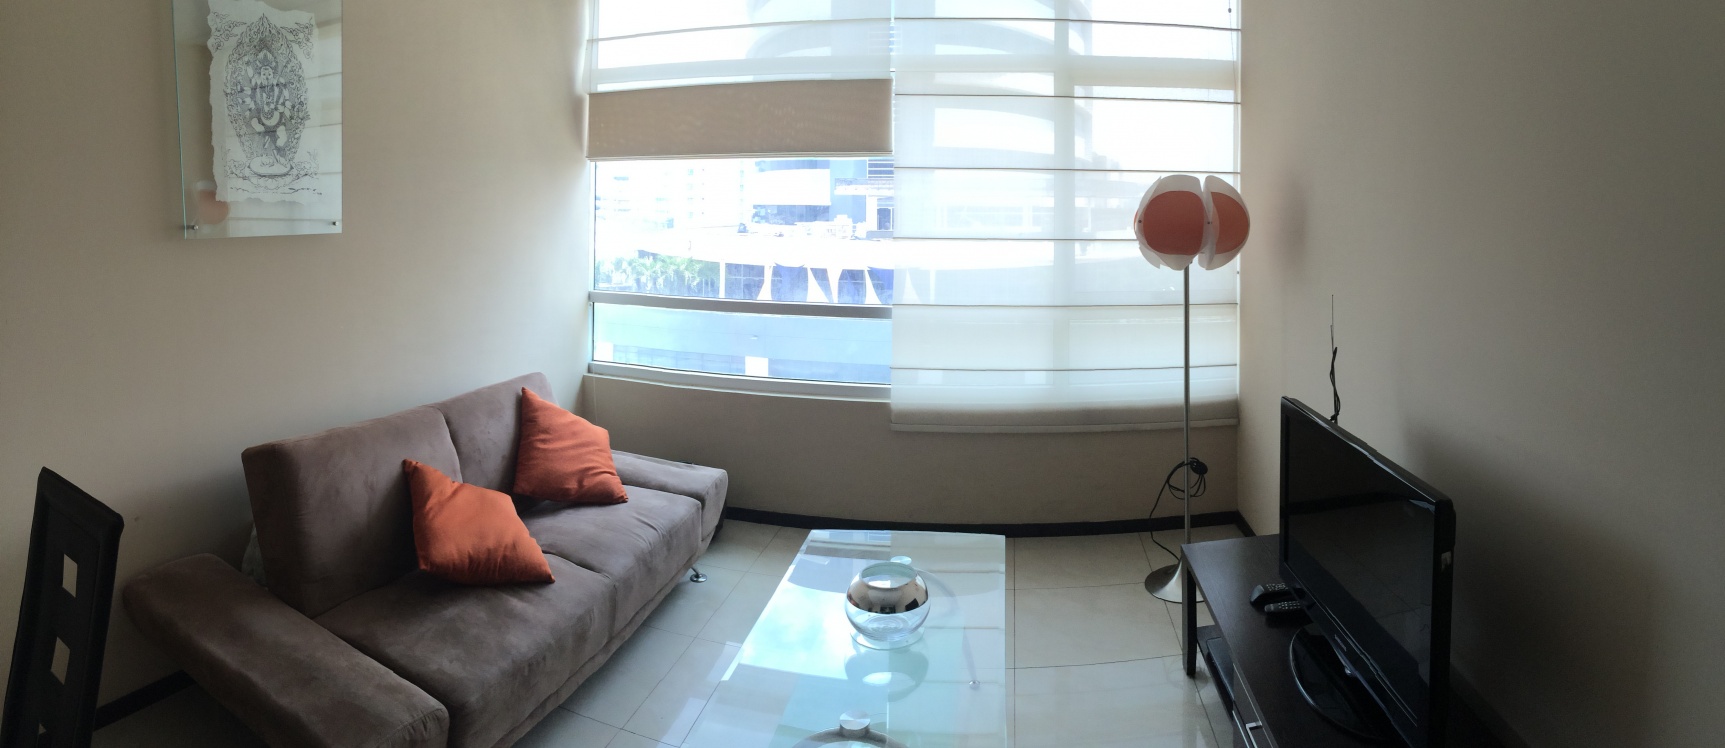 GeoBienes - Suite de Alquiler en Elite Building sector Mall del Sol - Guayaquil - Plusvalia Guayaquil Casas de venta y alquiler Inmobiliaria Ecuador